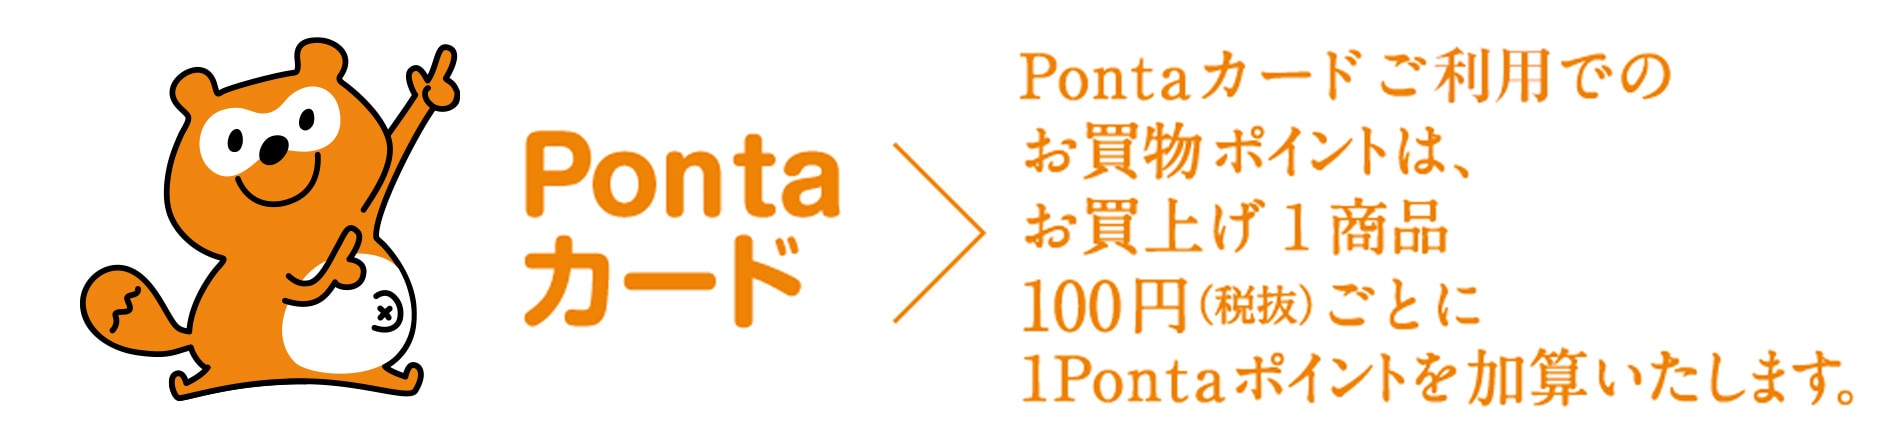 Pontaカードご提示でのお買物ポイントは、100円(税抜)ごとに1Pontaポイントを加算いたします。